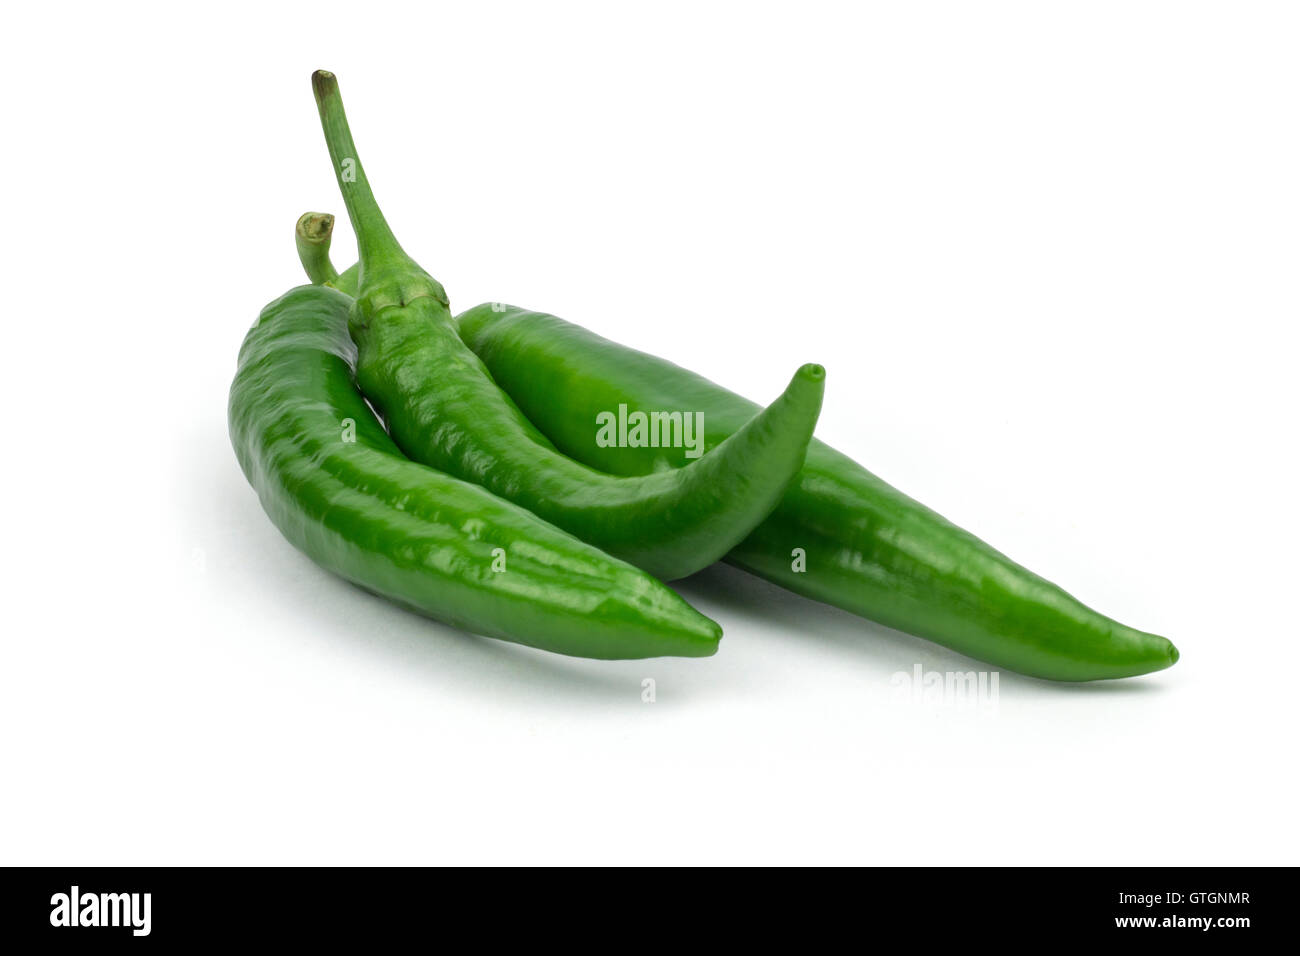 Hot pepe verde/s isolati su sfondo bianco. percorso di clipping incluso in formato jpeg. Foto Stock